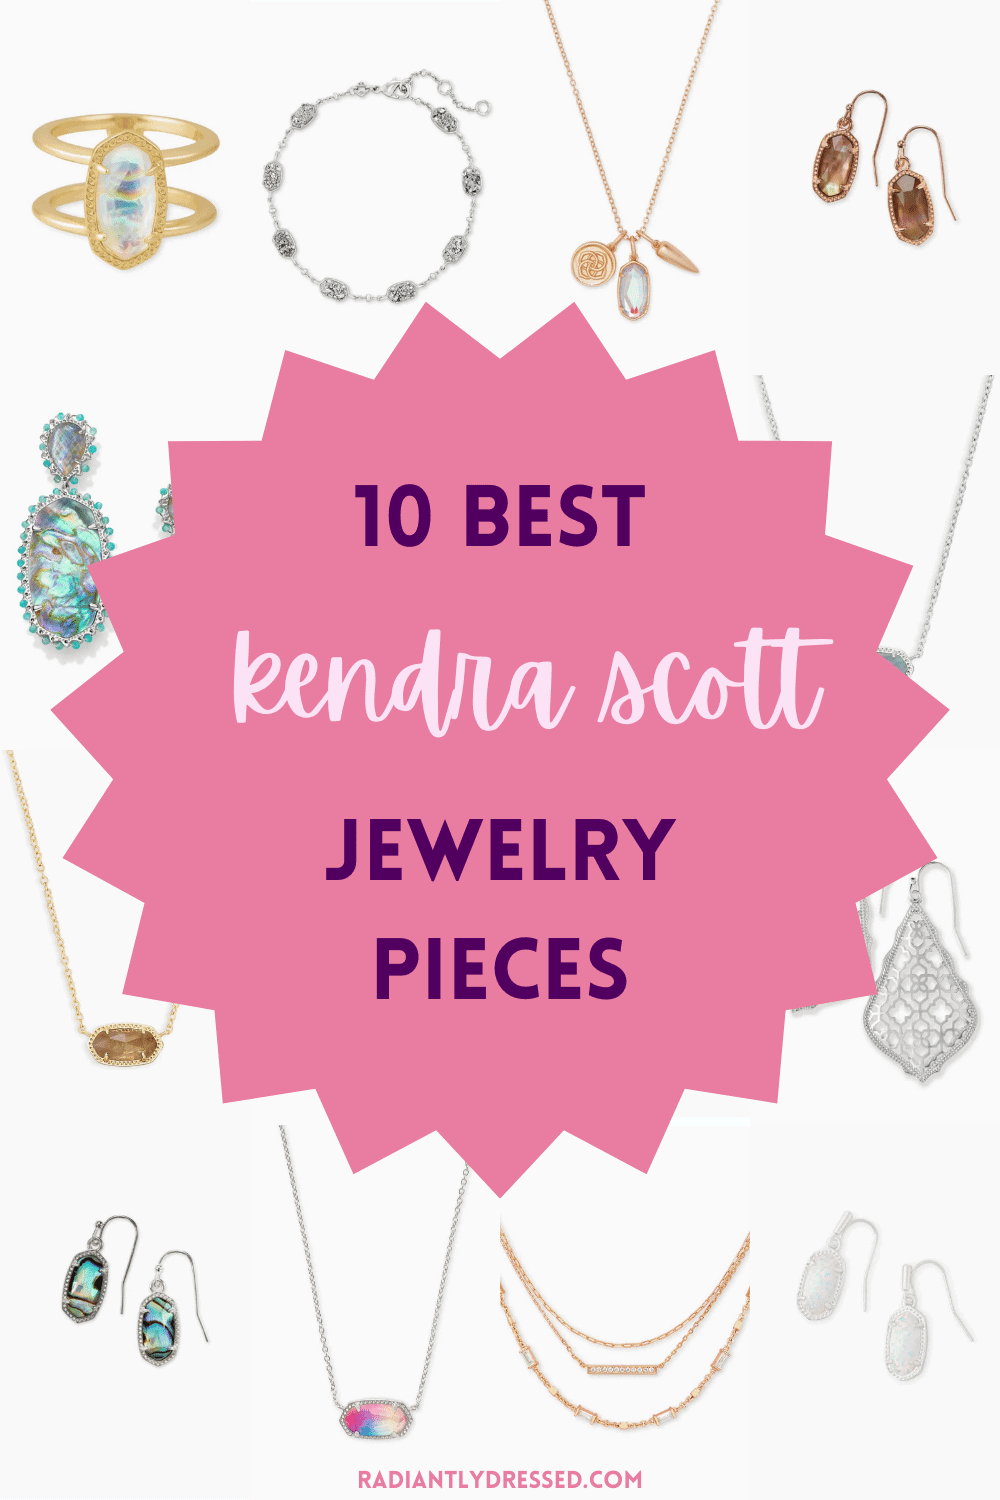 10 best kendra scott jewelry pieces